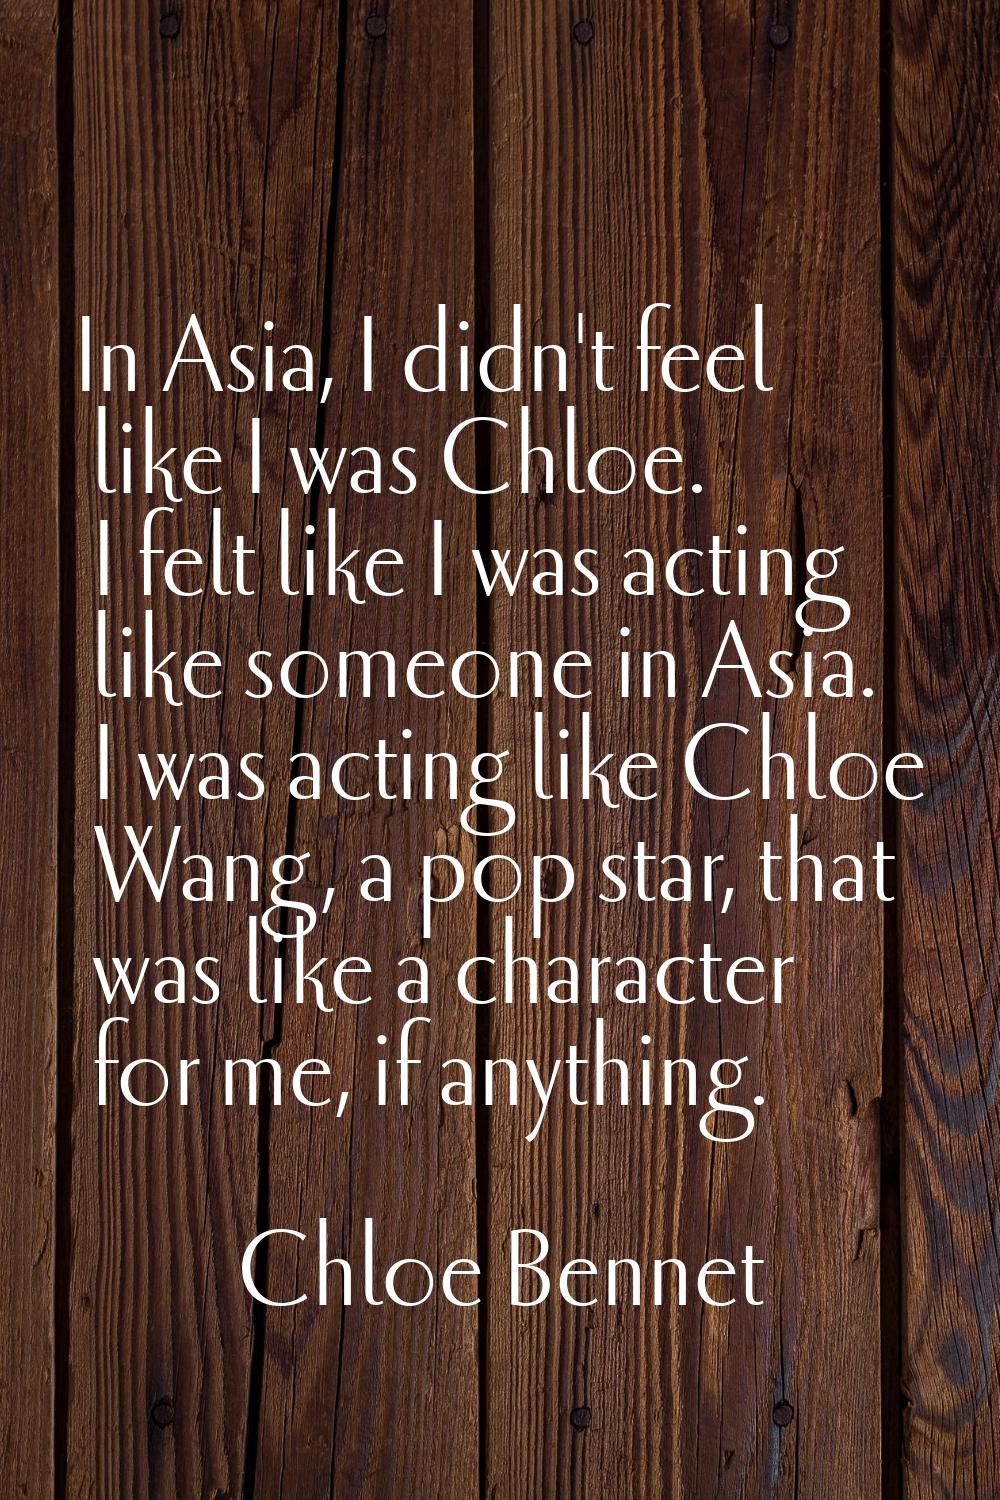 In Asia, I didn't feel like I was Chloe. I felt like I was acting like someone in Asia. I was actin